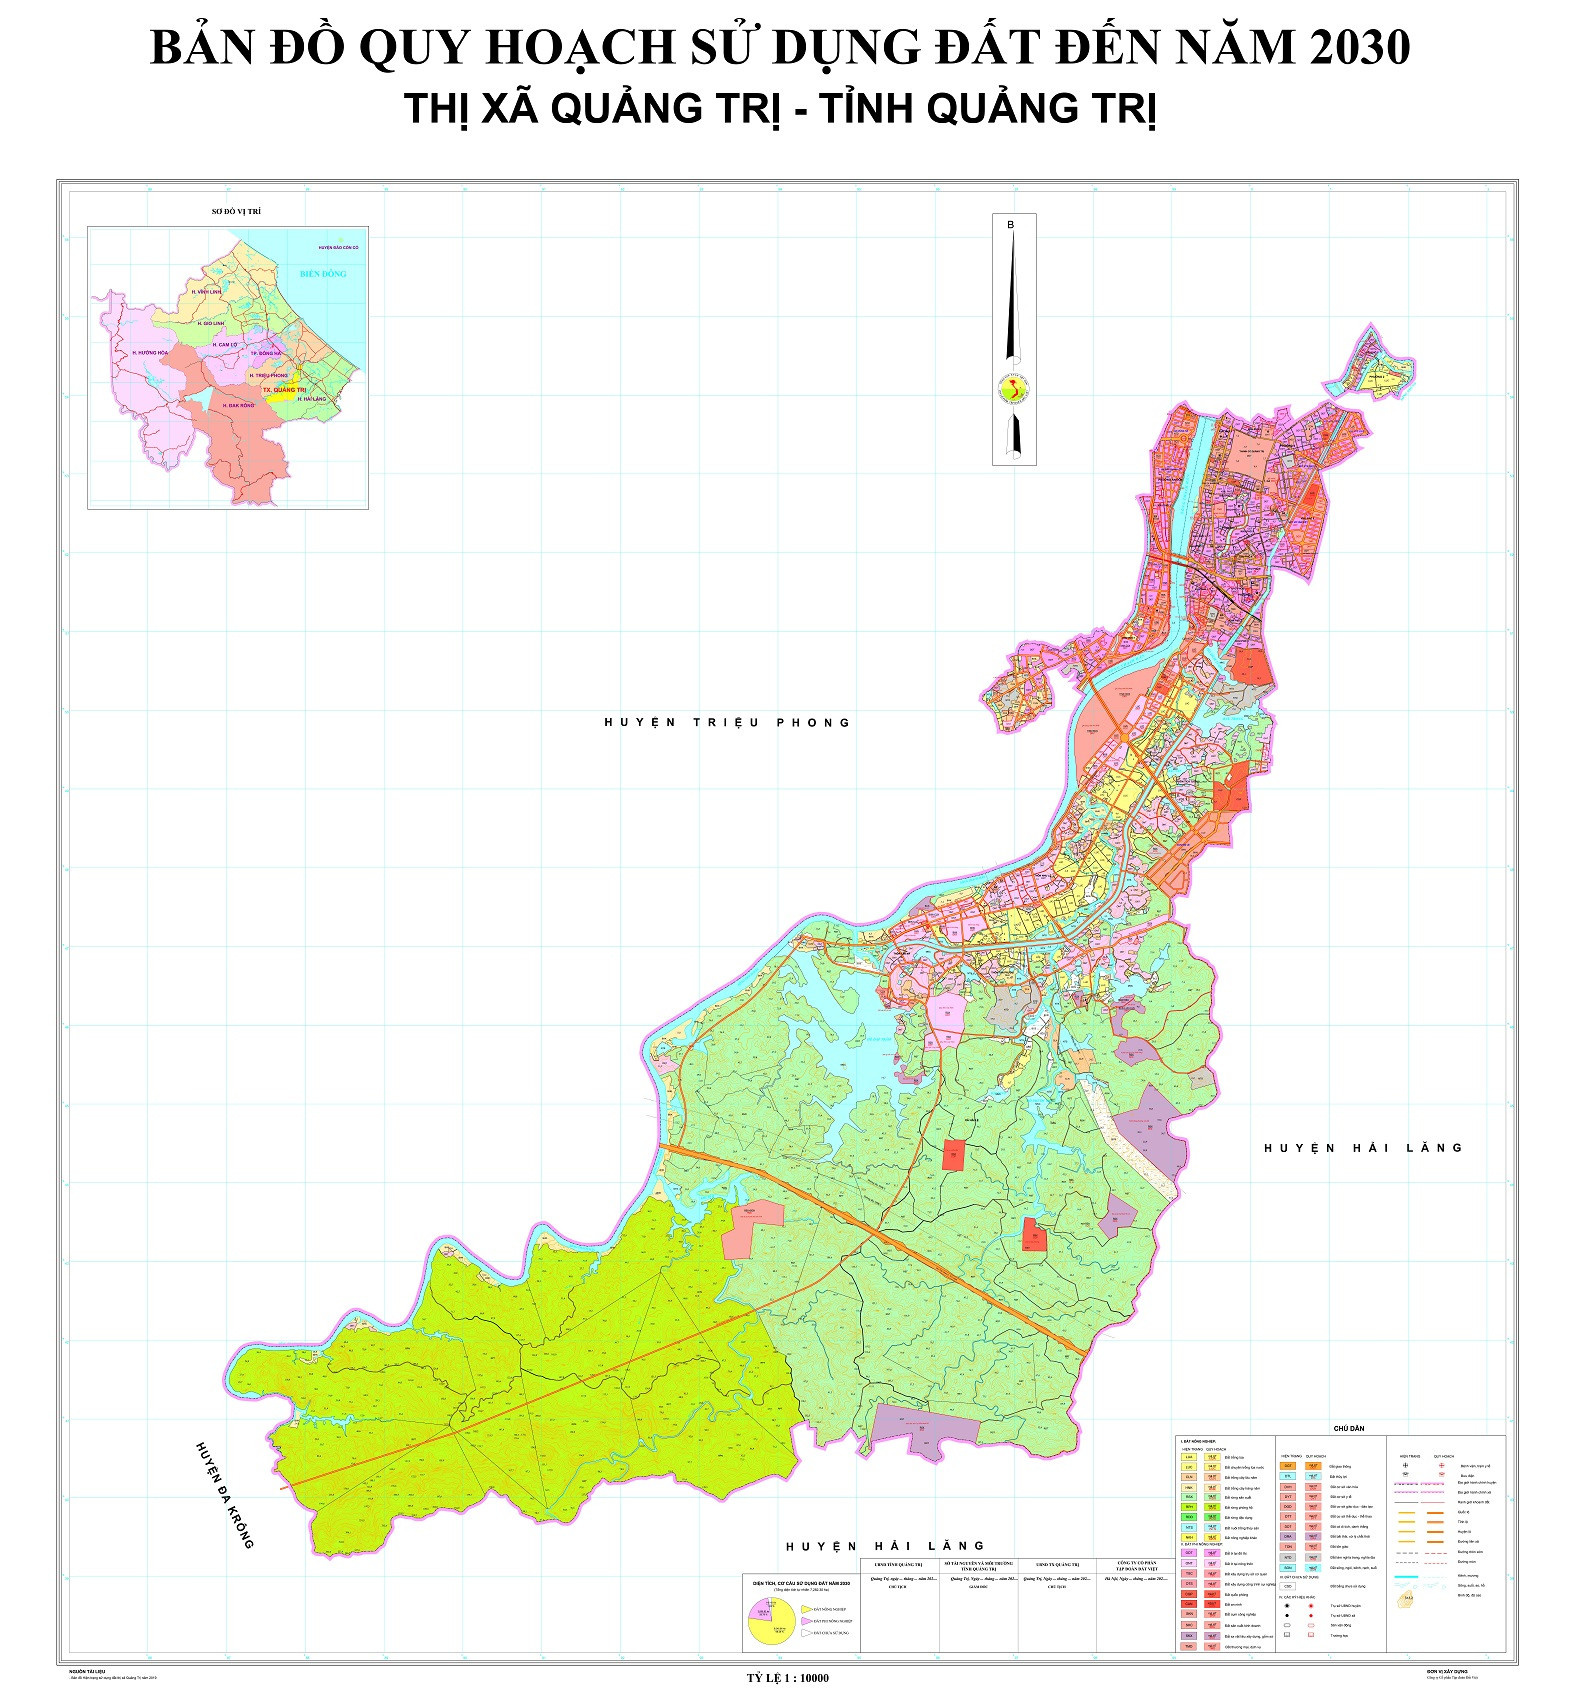  Bản đồ quy hoạch thị xã Quảng Trị